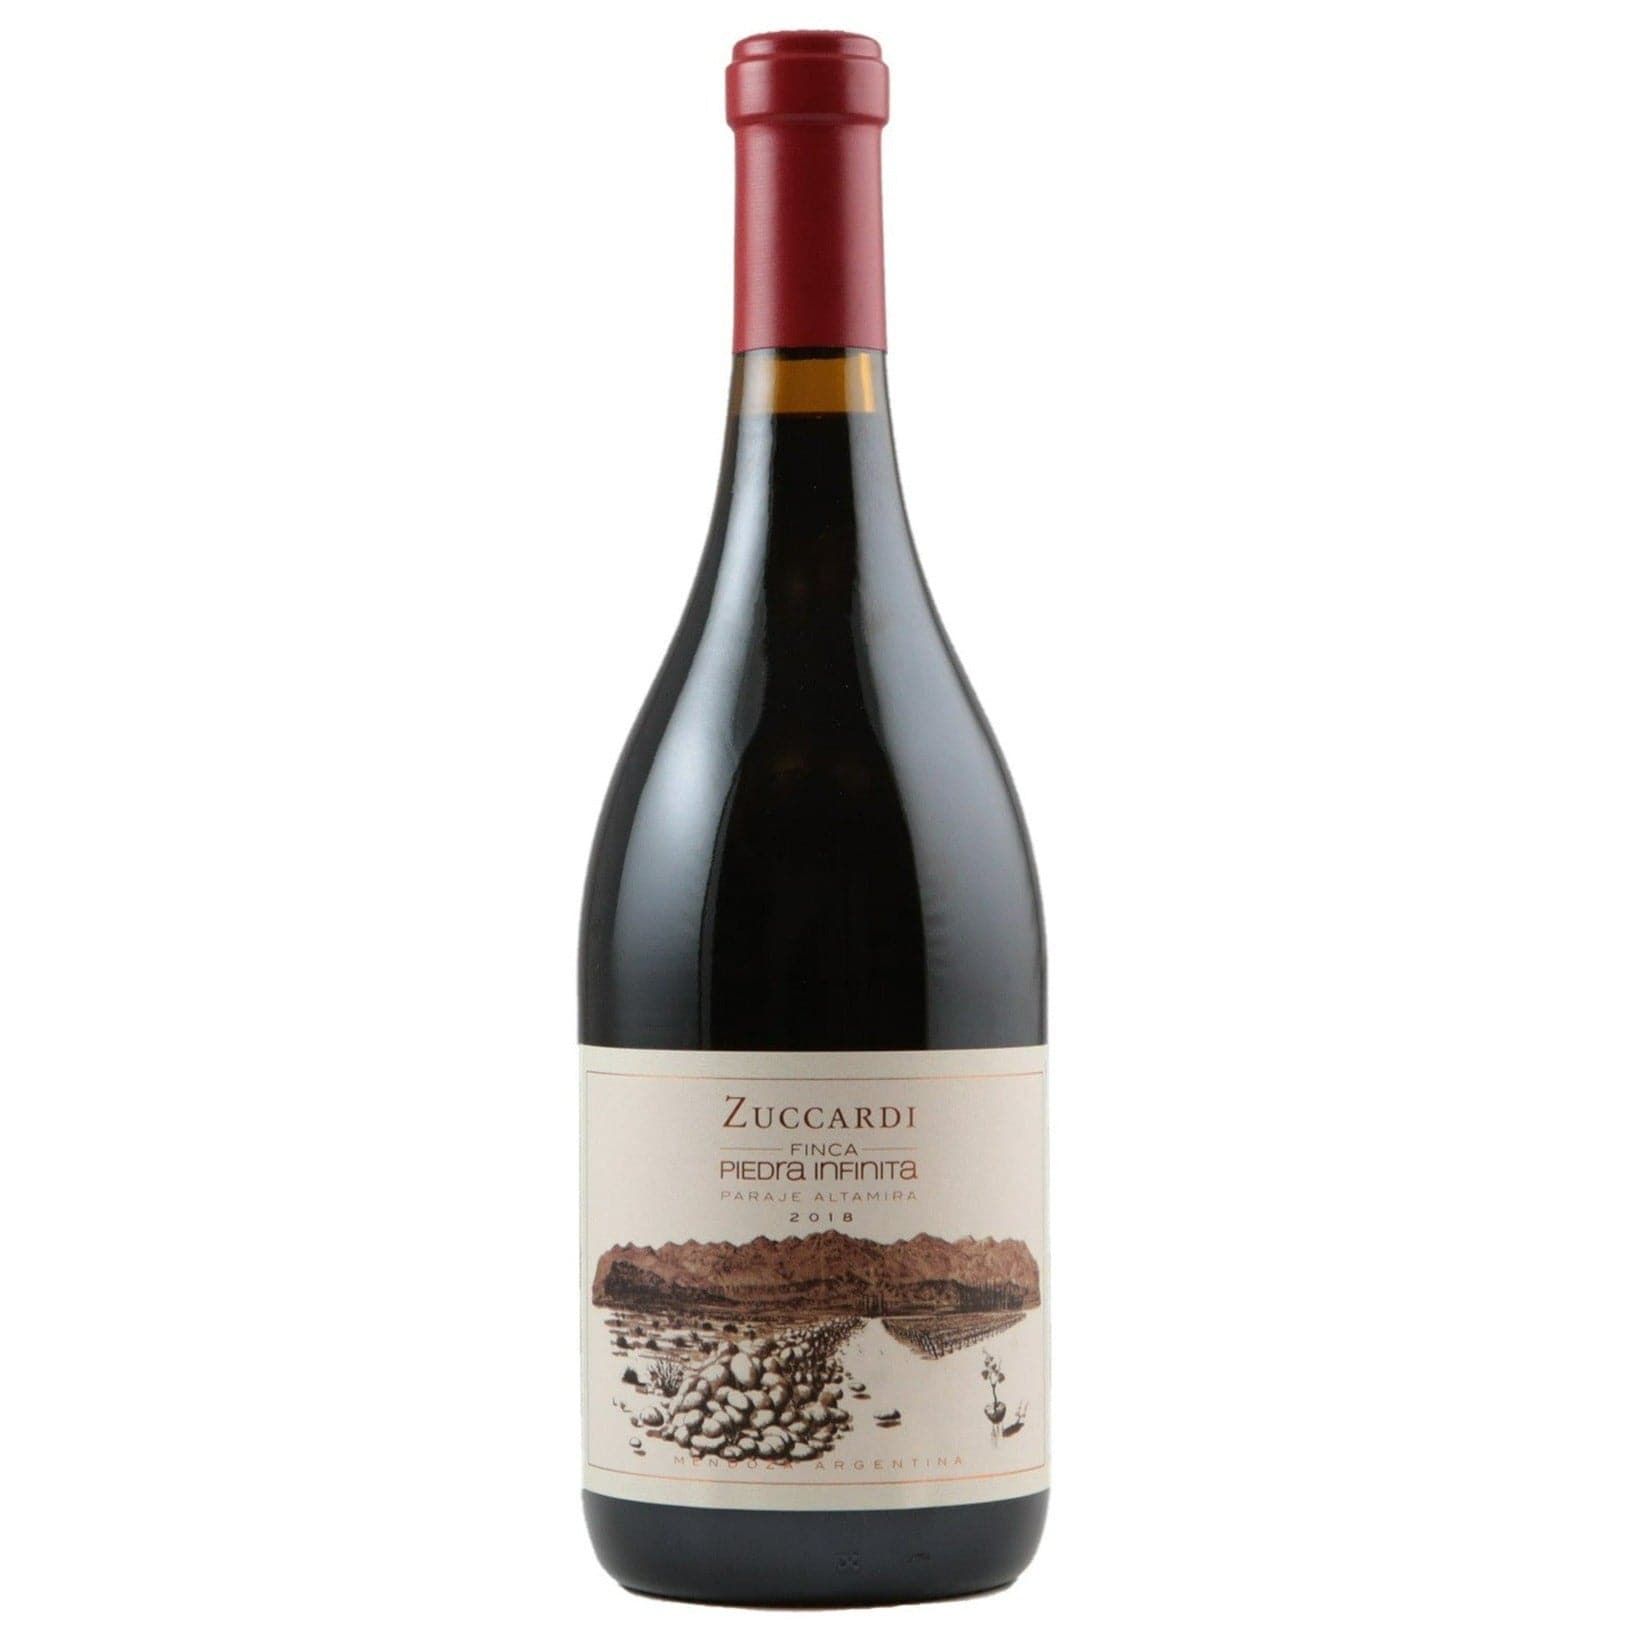 Single bottle of Red wine Familia Zuccardi, Finca Piedra Infinita, Mendoza, 2018 100% Malbec